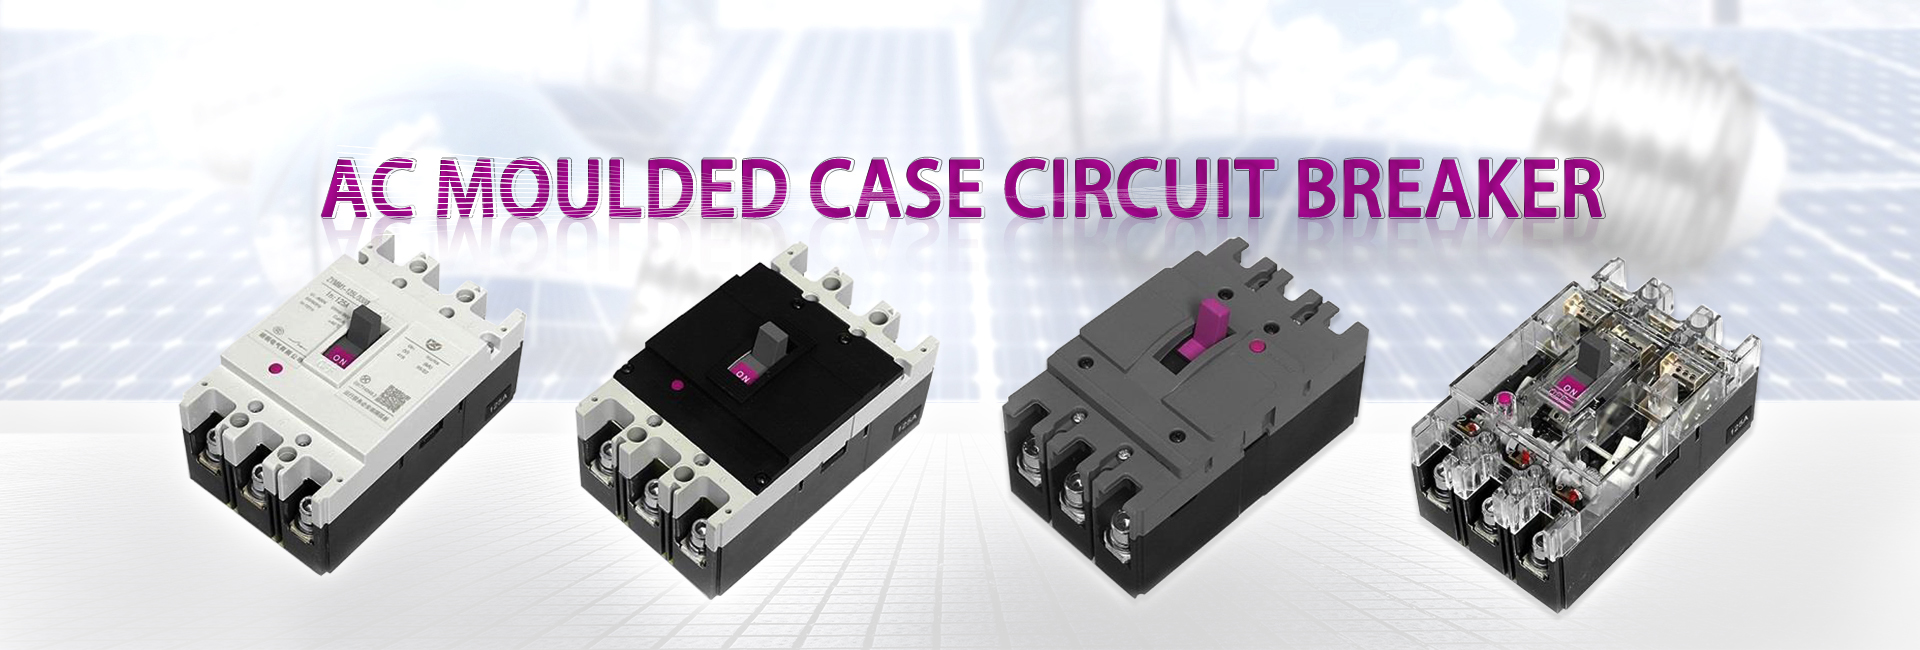 Moulded Case Circuit Breaker Manufacturer